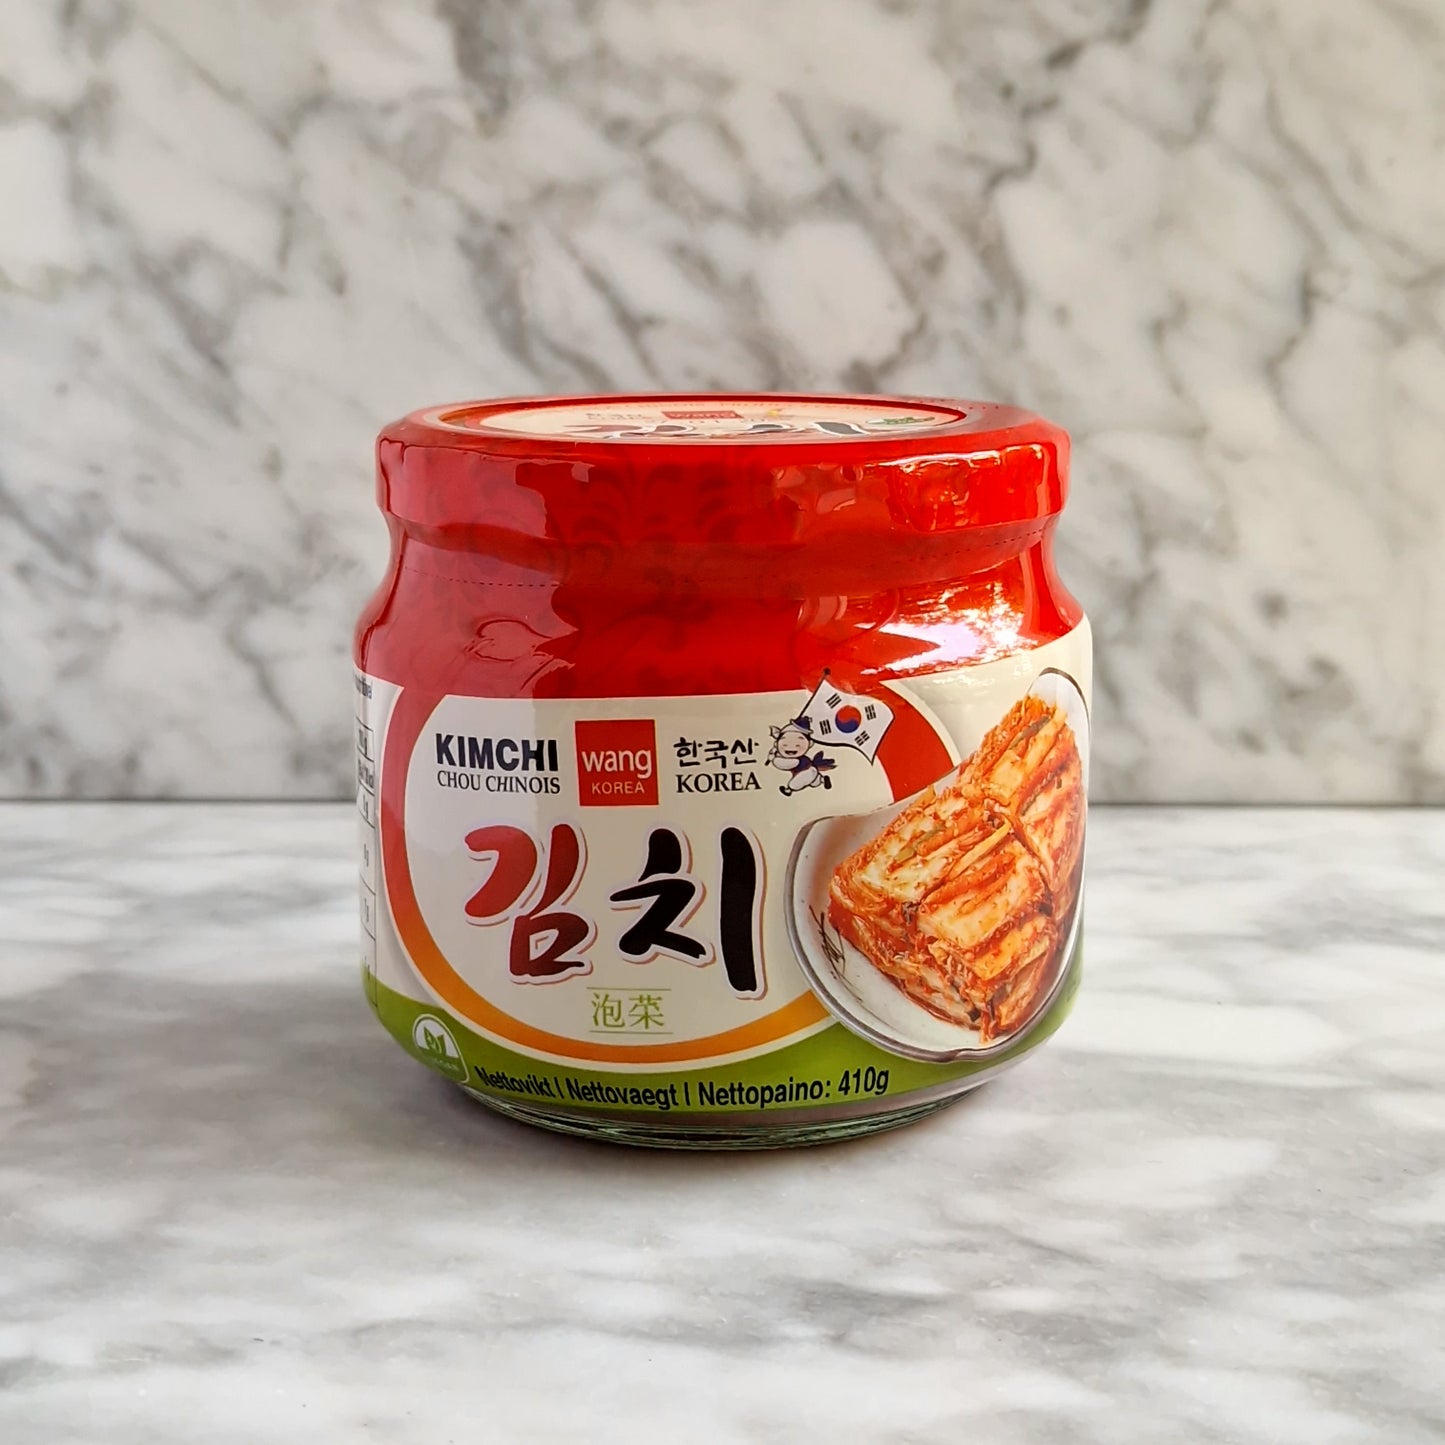 Choux coréen préparé Kimchi - Piquant doux 410g Wang